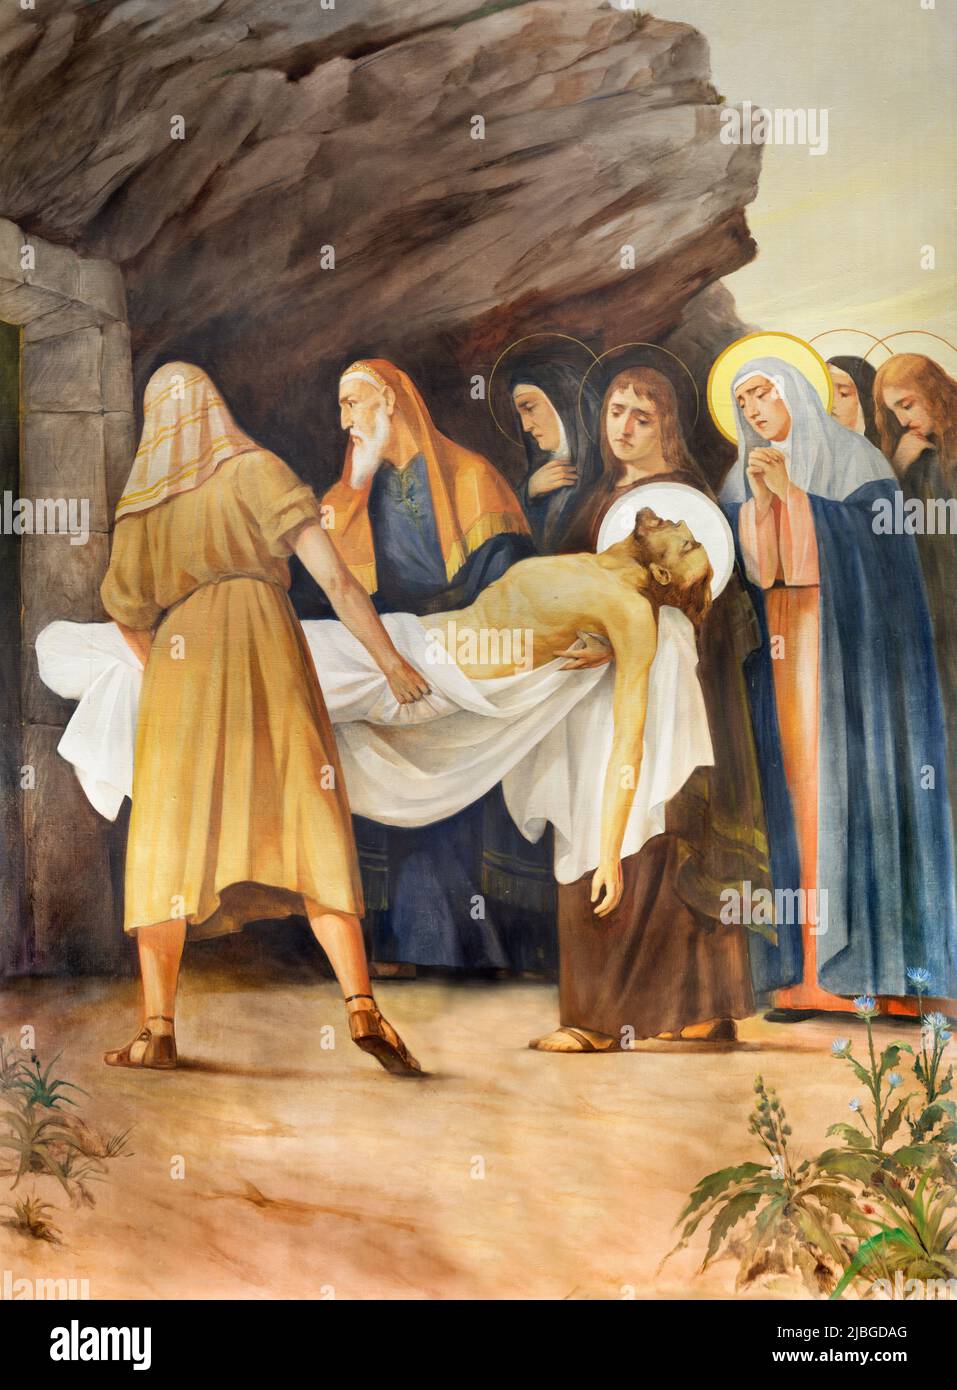 VALENCIA, SPAGNA - 17 FEBBRAIO 2022: La sepoltura pittorica di Gesù come parte della Via Crucis della chiesa Iglesia de Buen Pastor di Bellver Delmáy. Foto Stock